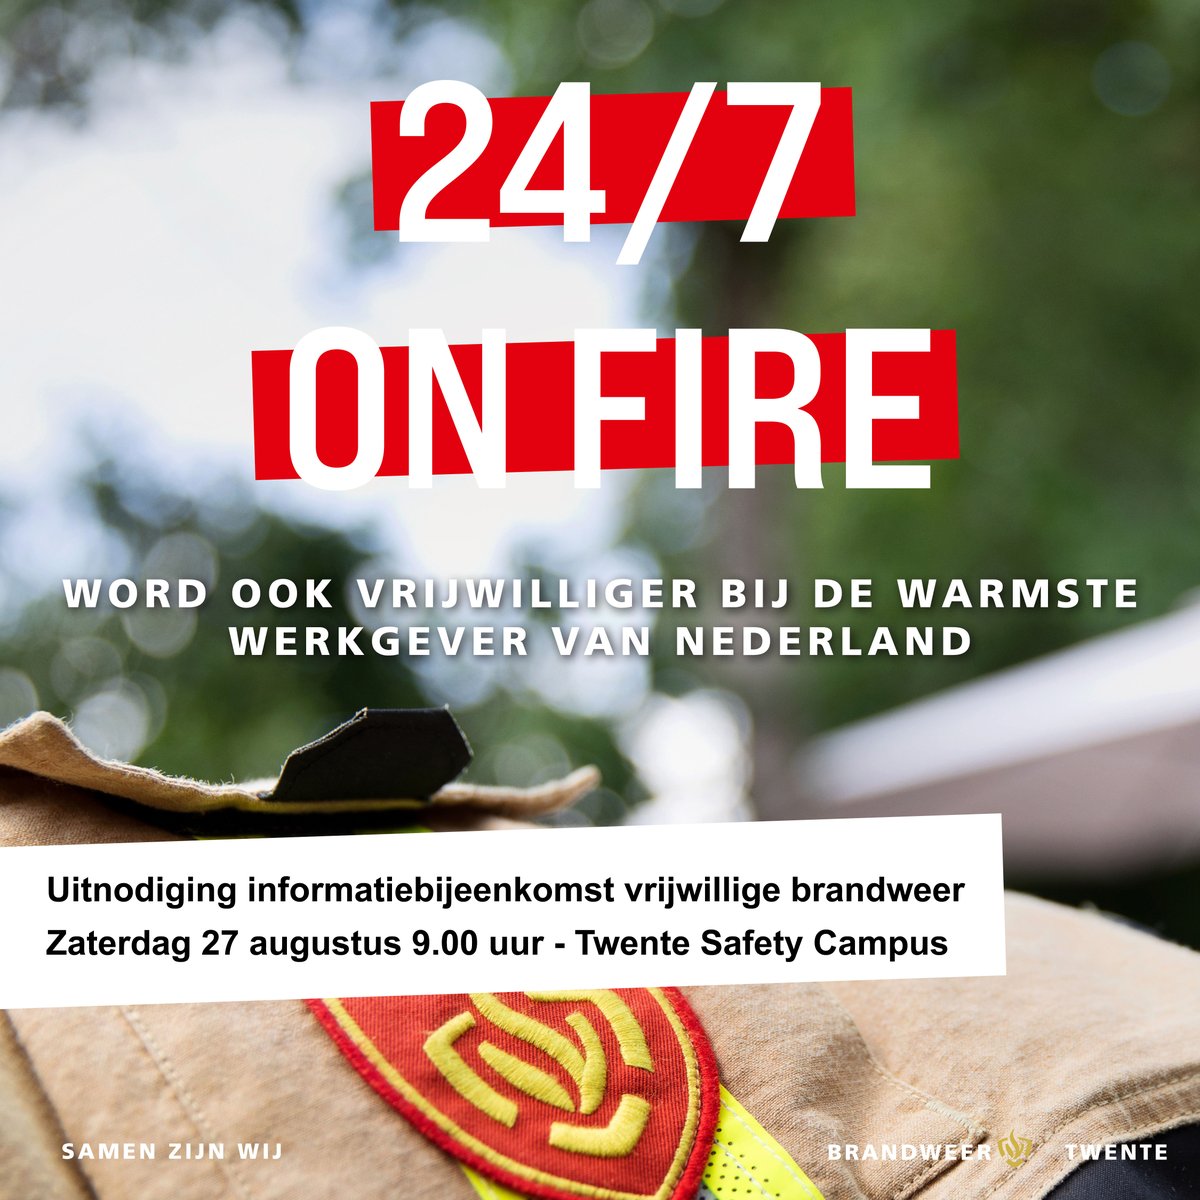 Op zaterdag 27 augustus van 9.00 tot 11.30 uur organiseren we voor geïnteresseerden in de vrijwillige brandweer een informatiebijeenkomst. We nemen je op de @safetycampusvrt in #Enschede mee in de wereld van de brandweer 🚒. #onfire #brandweertwente (1/2)